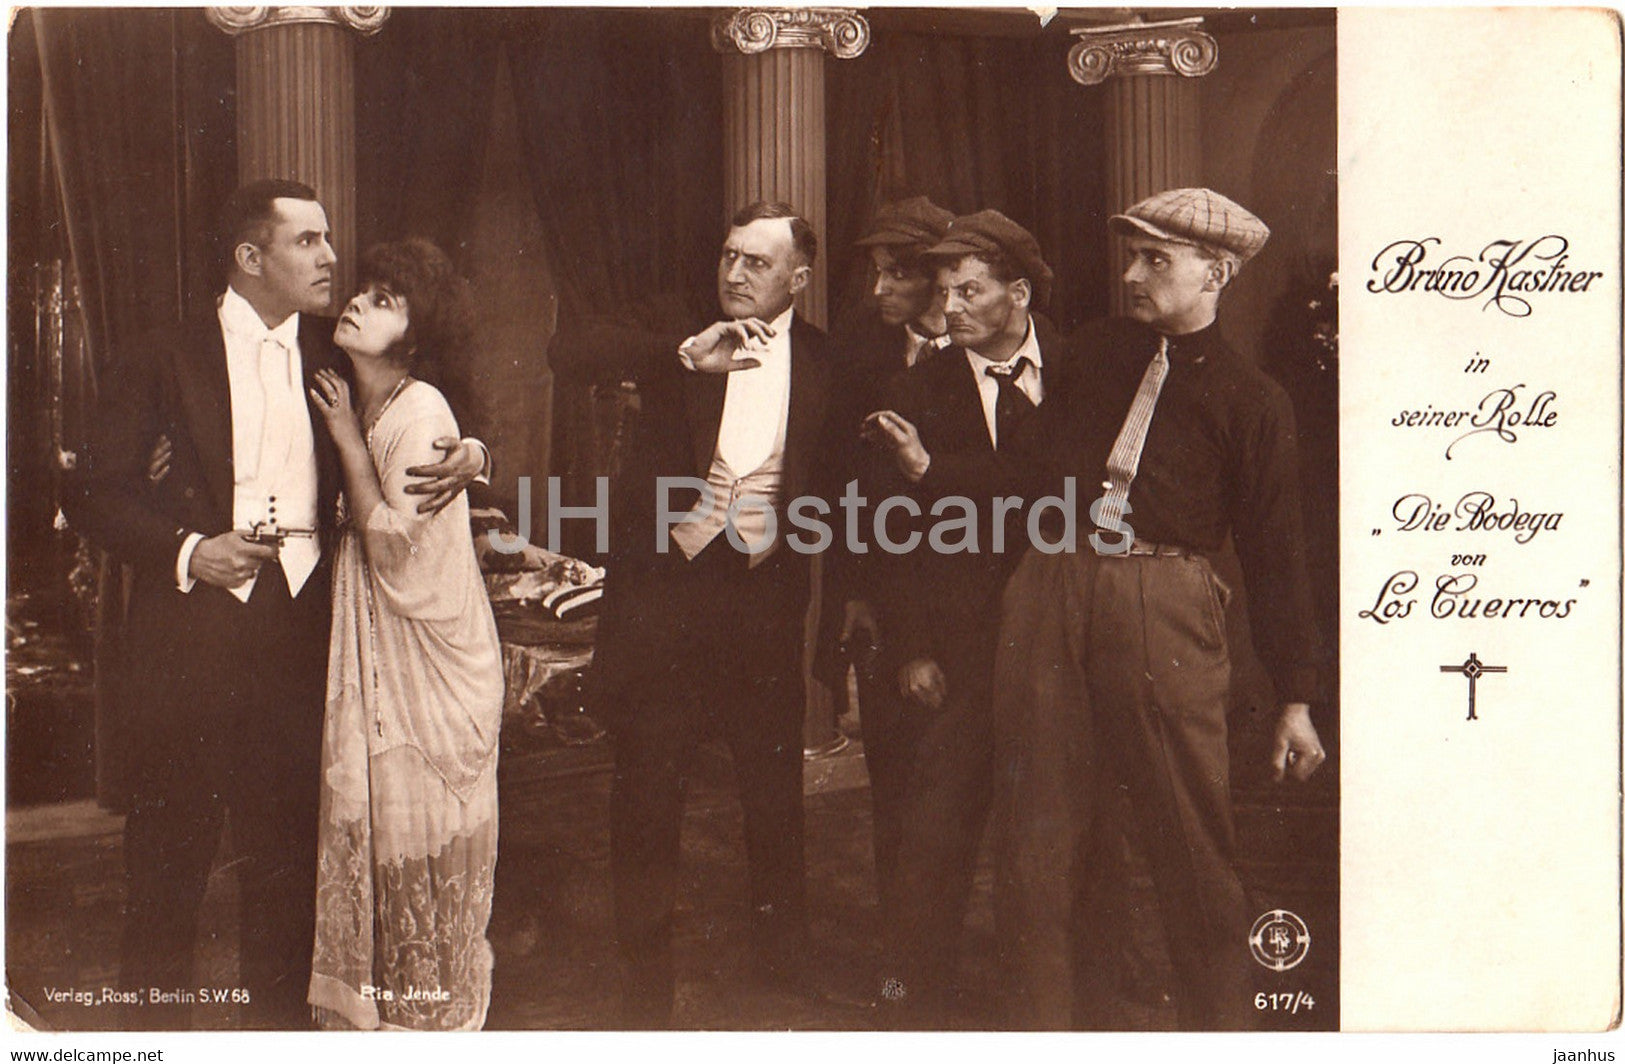 Bruno Kastner in seiner Rolle Die Bodega von Los Cuerros - Film - Movie - 617 - Germany - old postcard - unused - JH Postcards